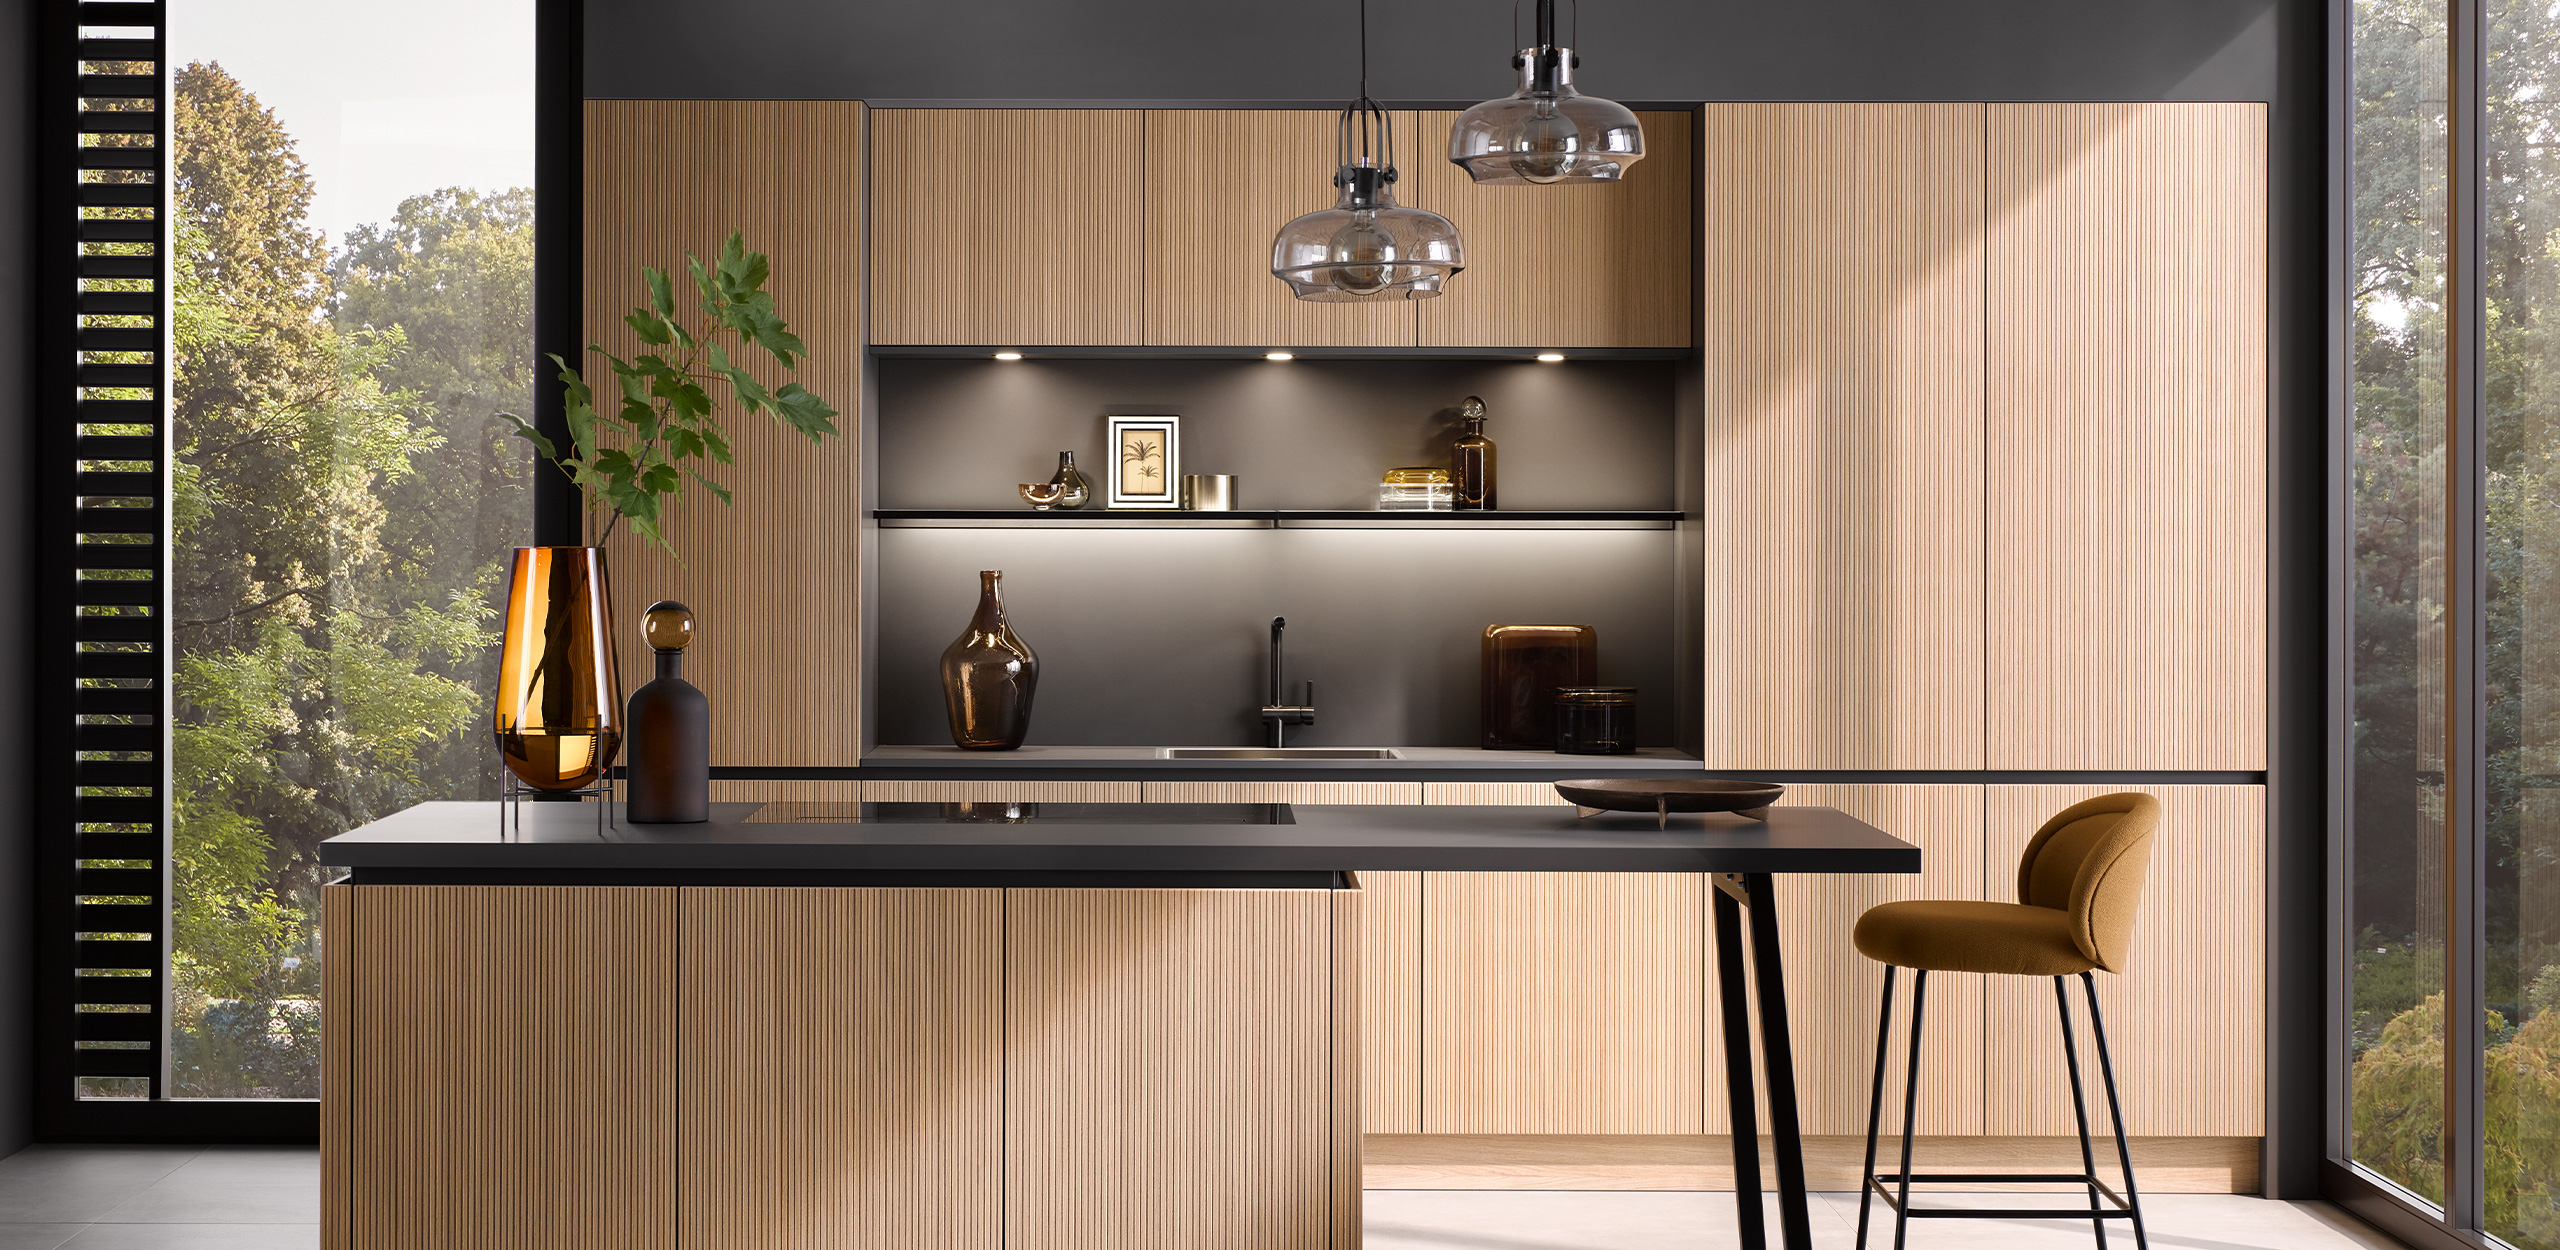 Cocinas modernas con componentes en negro mate y efecto madera